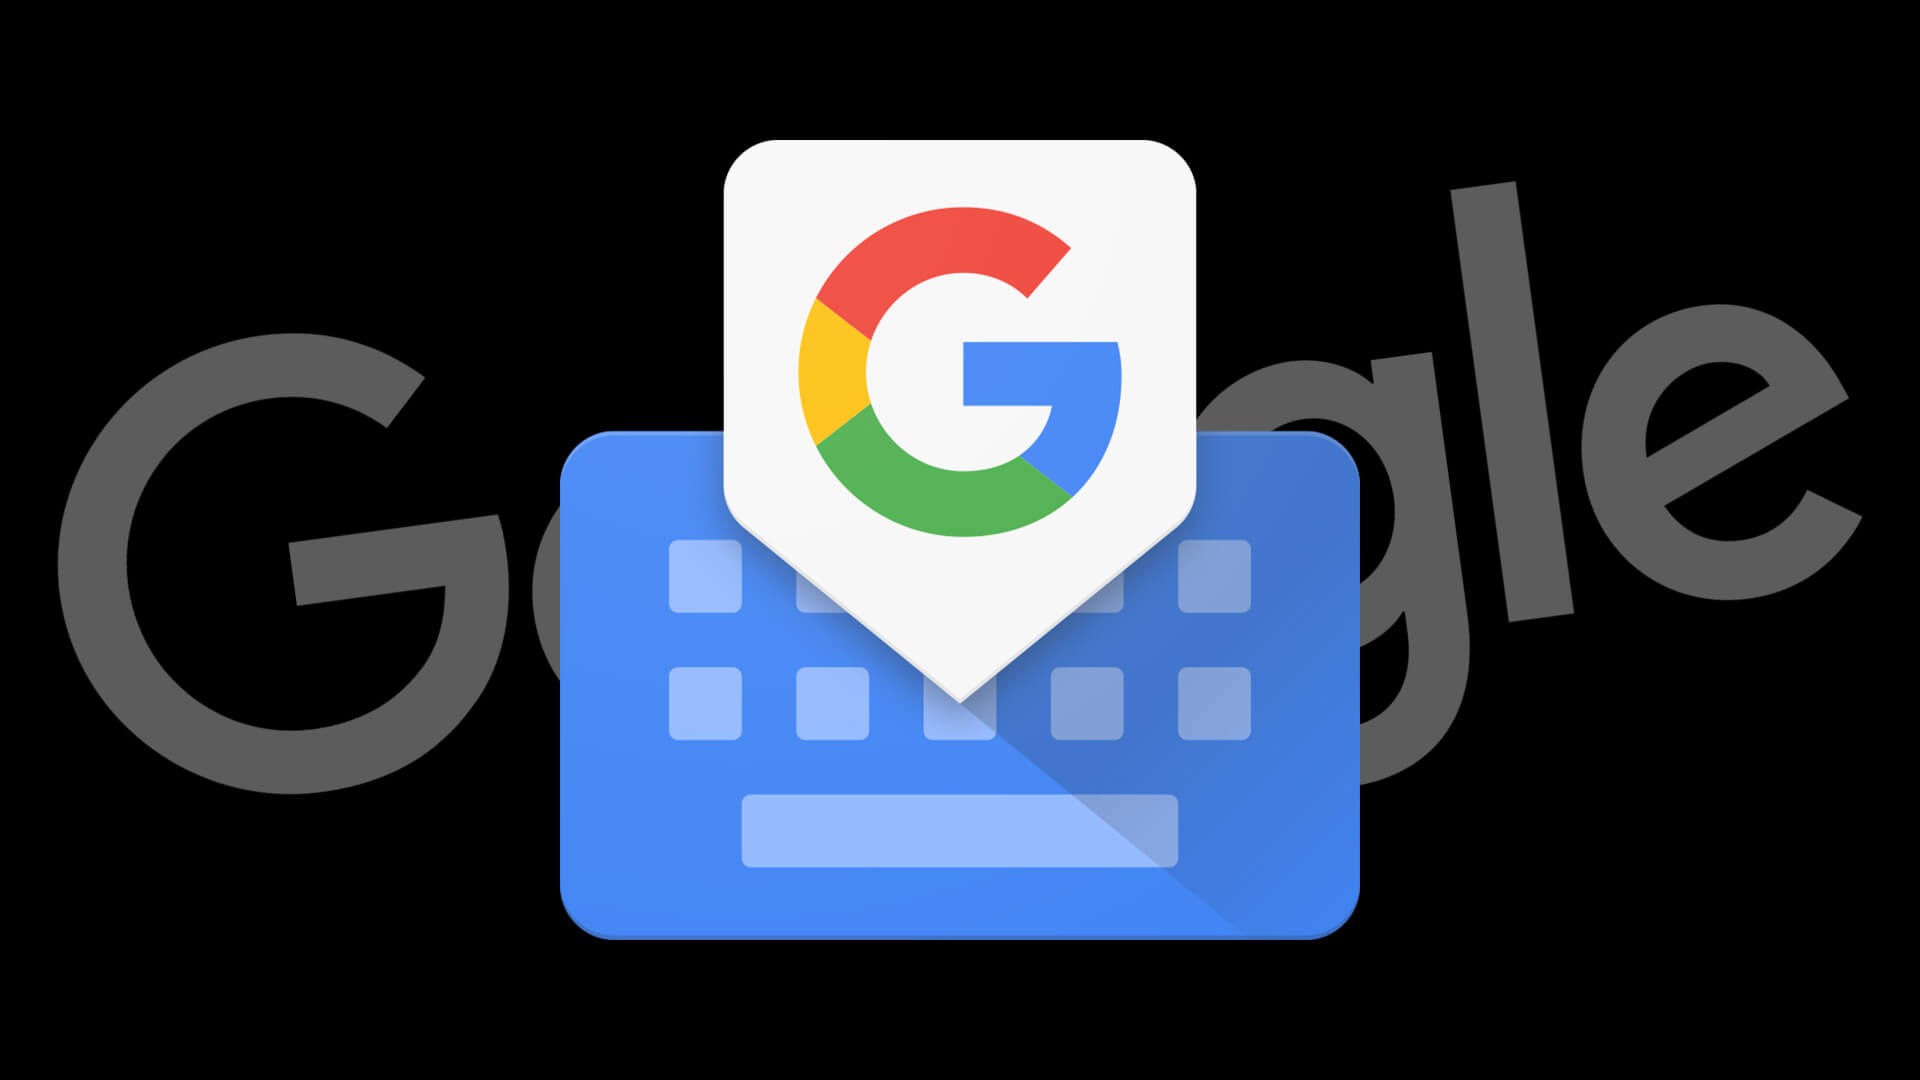 Descarga Gboard para Android, el nuevo teclado de Google